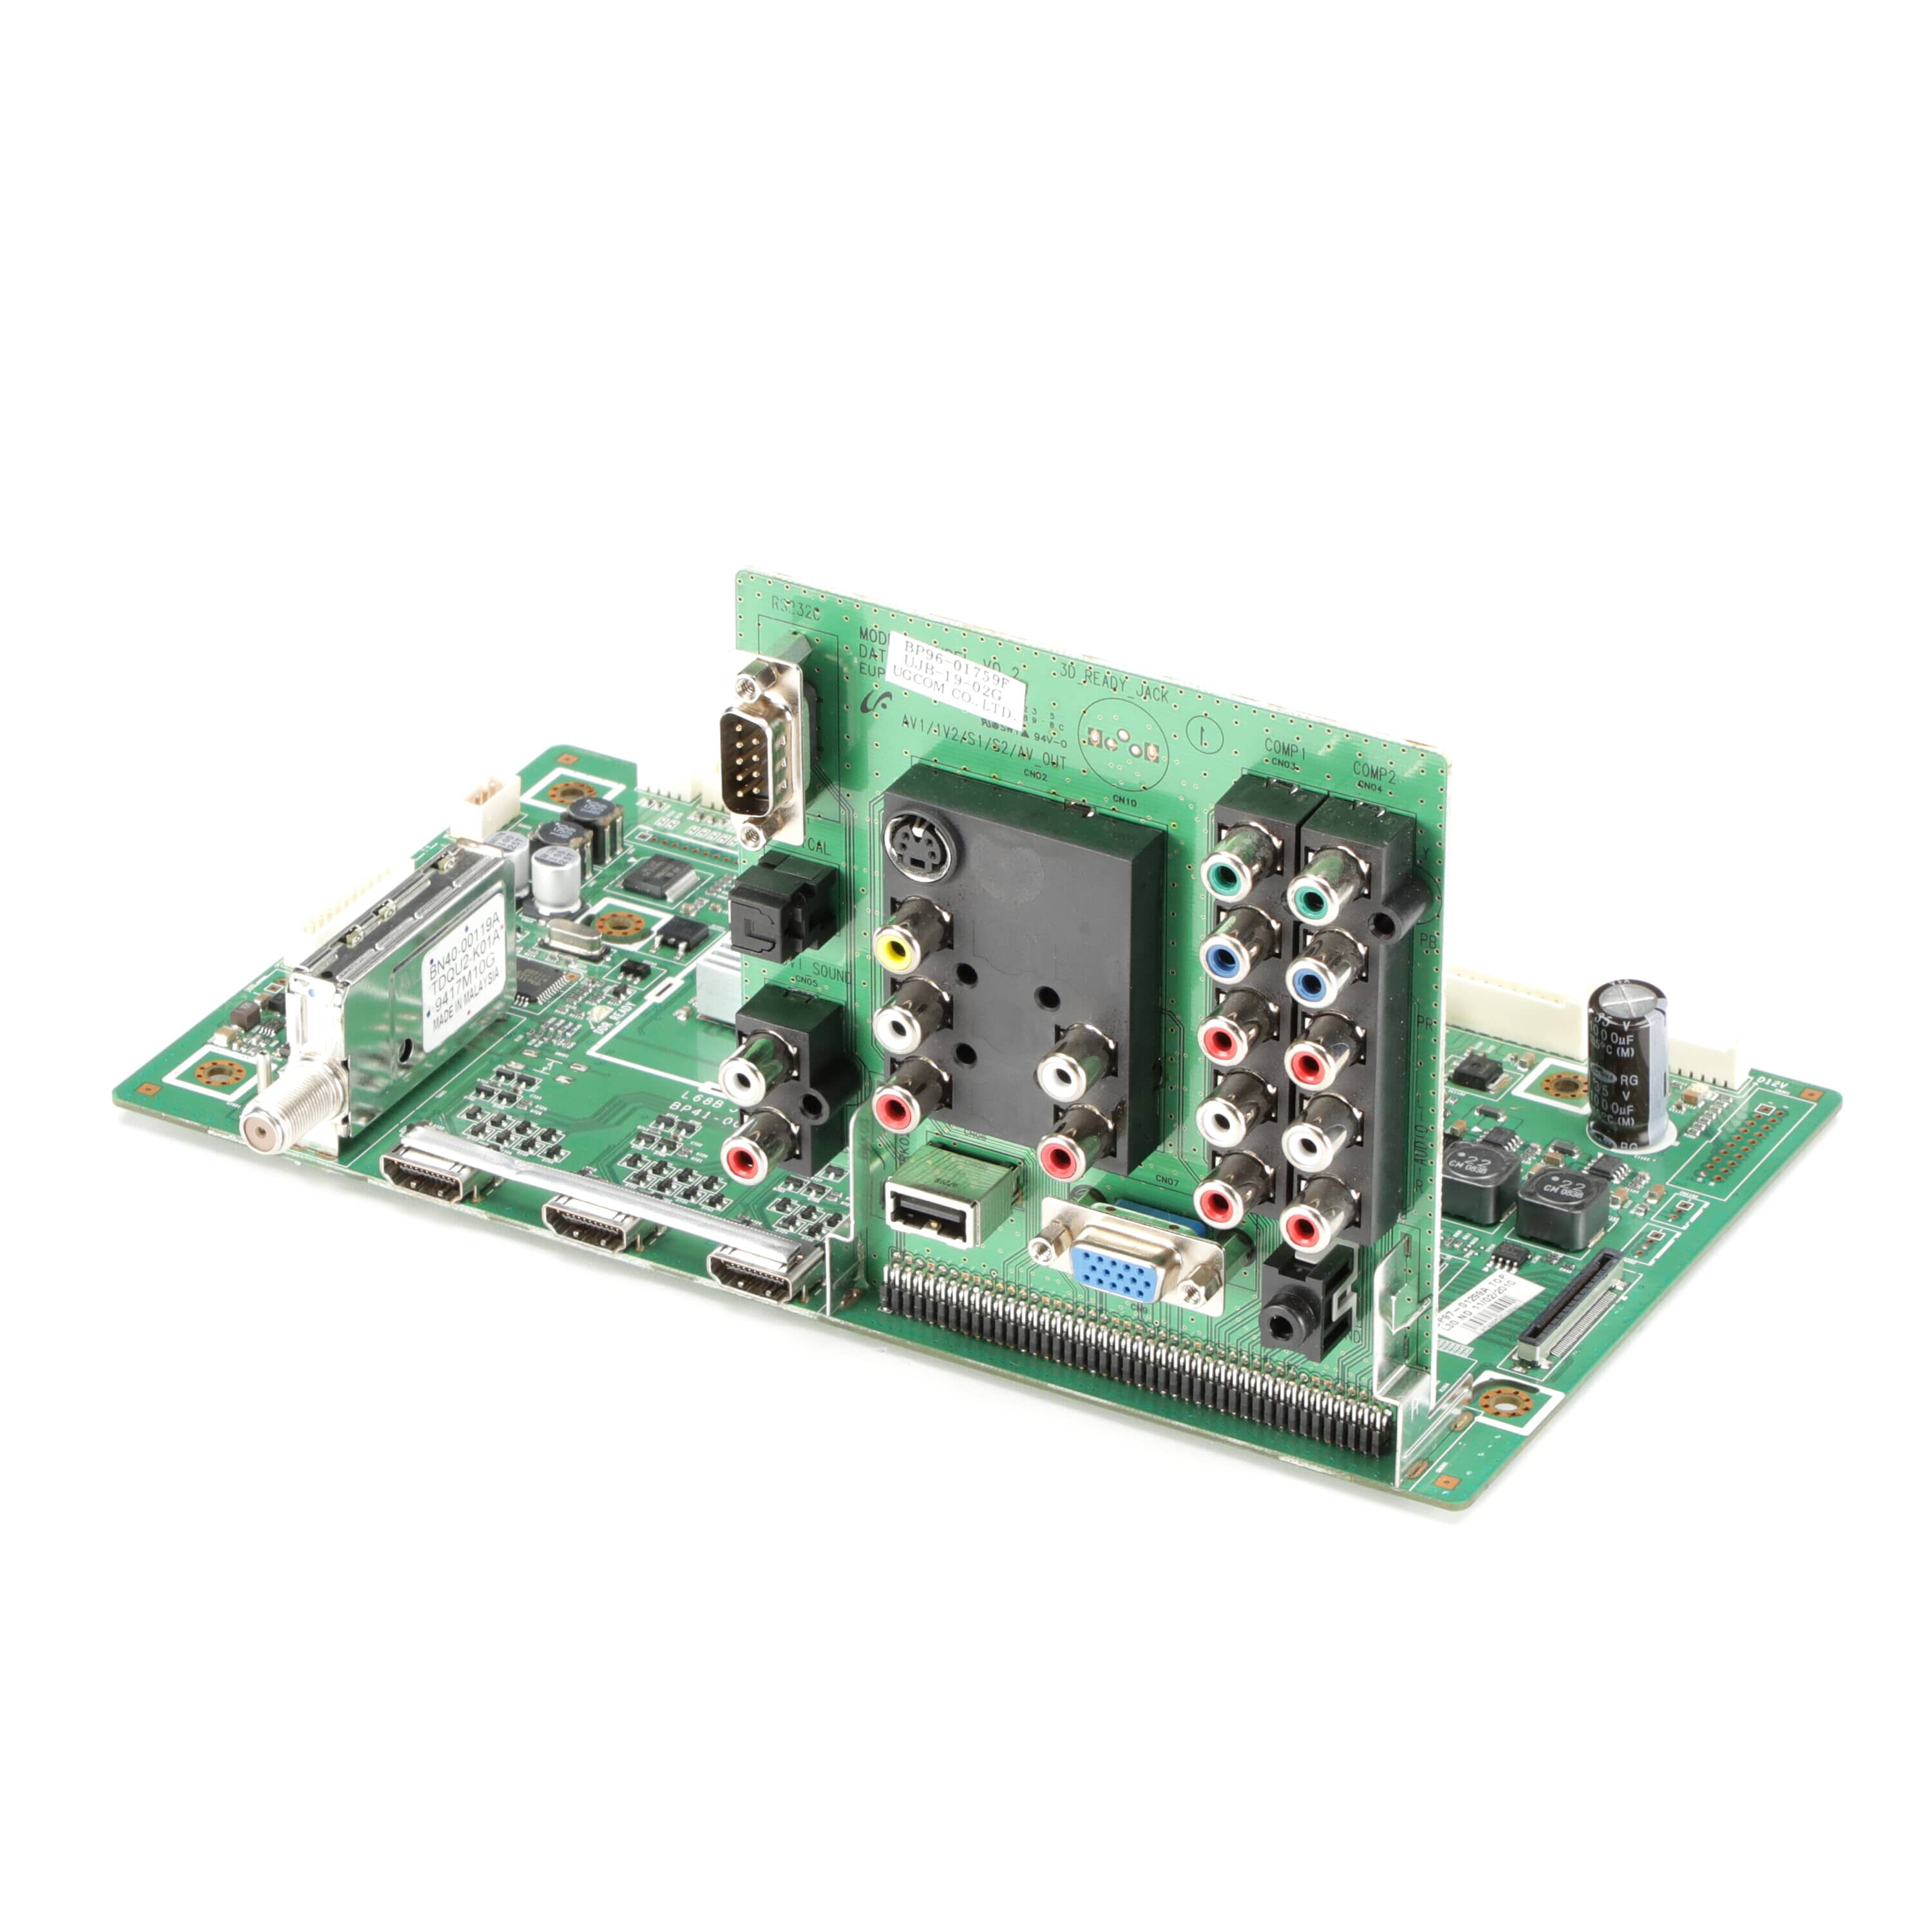 BP94-02337A Main PCB Board Assembly - Samsung Parts USA